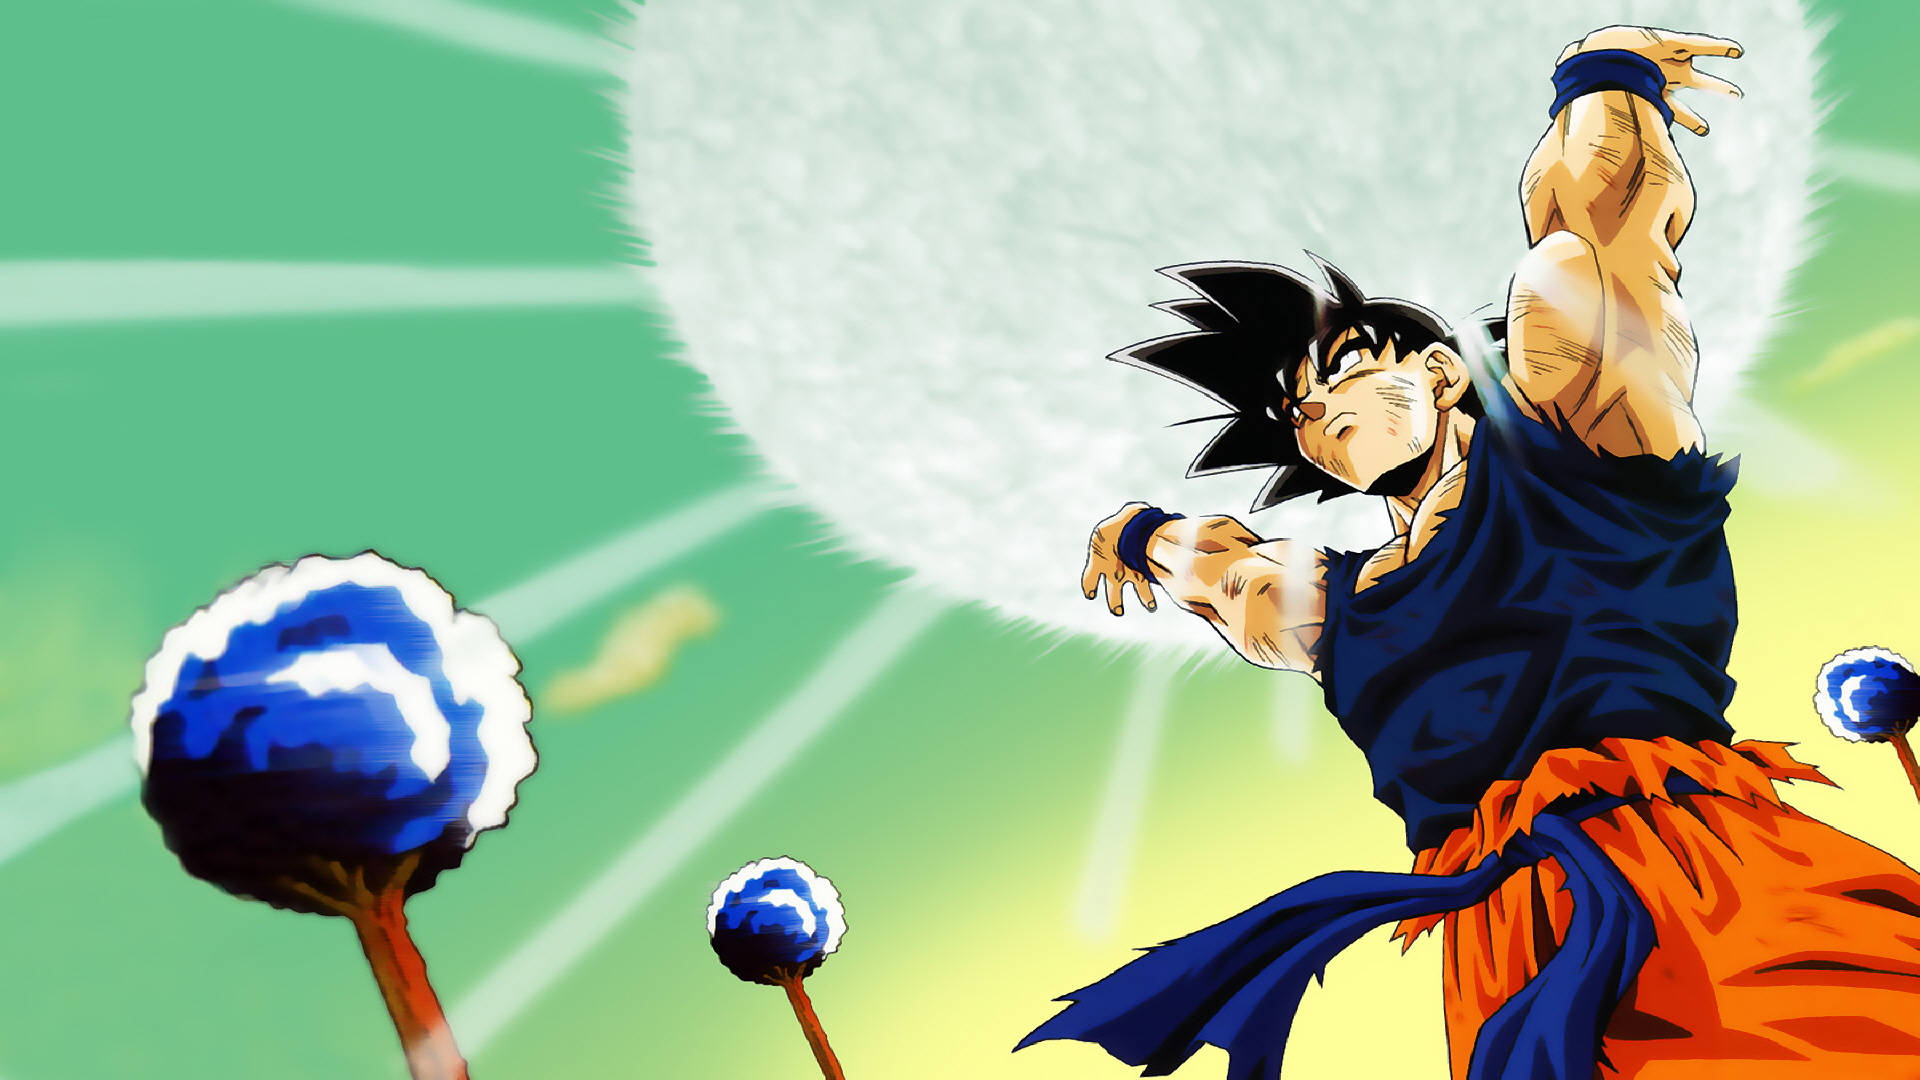 Goku 1920 X 1080 Background